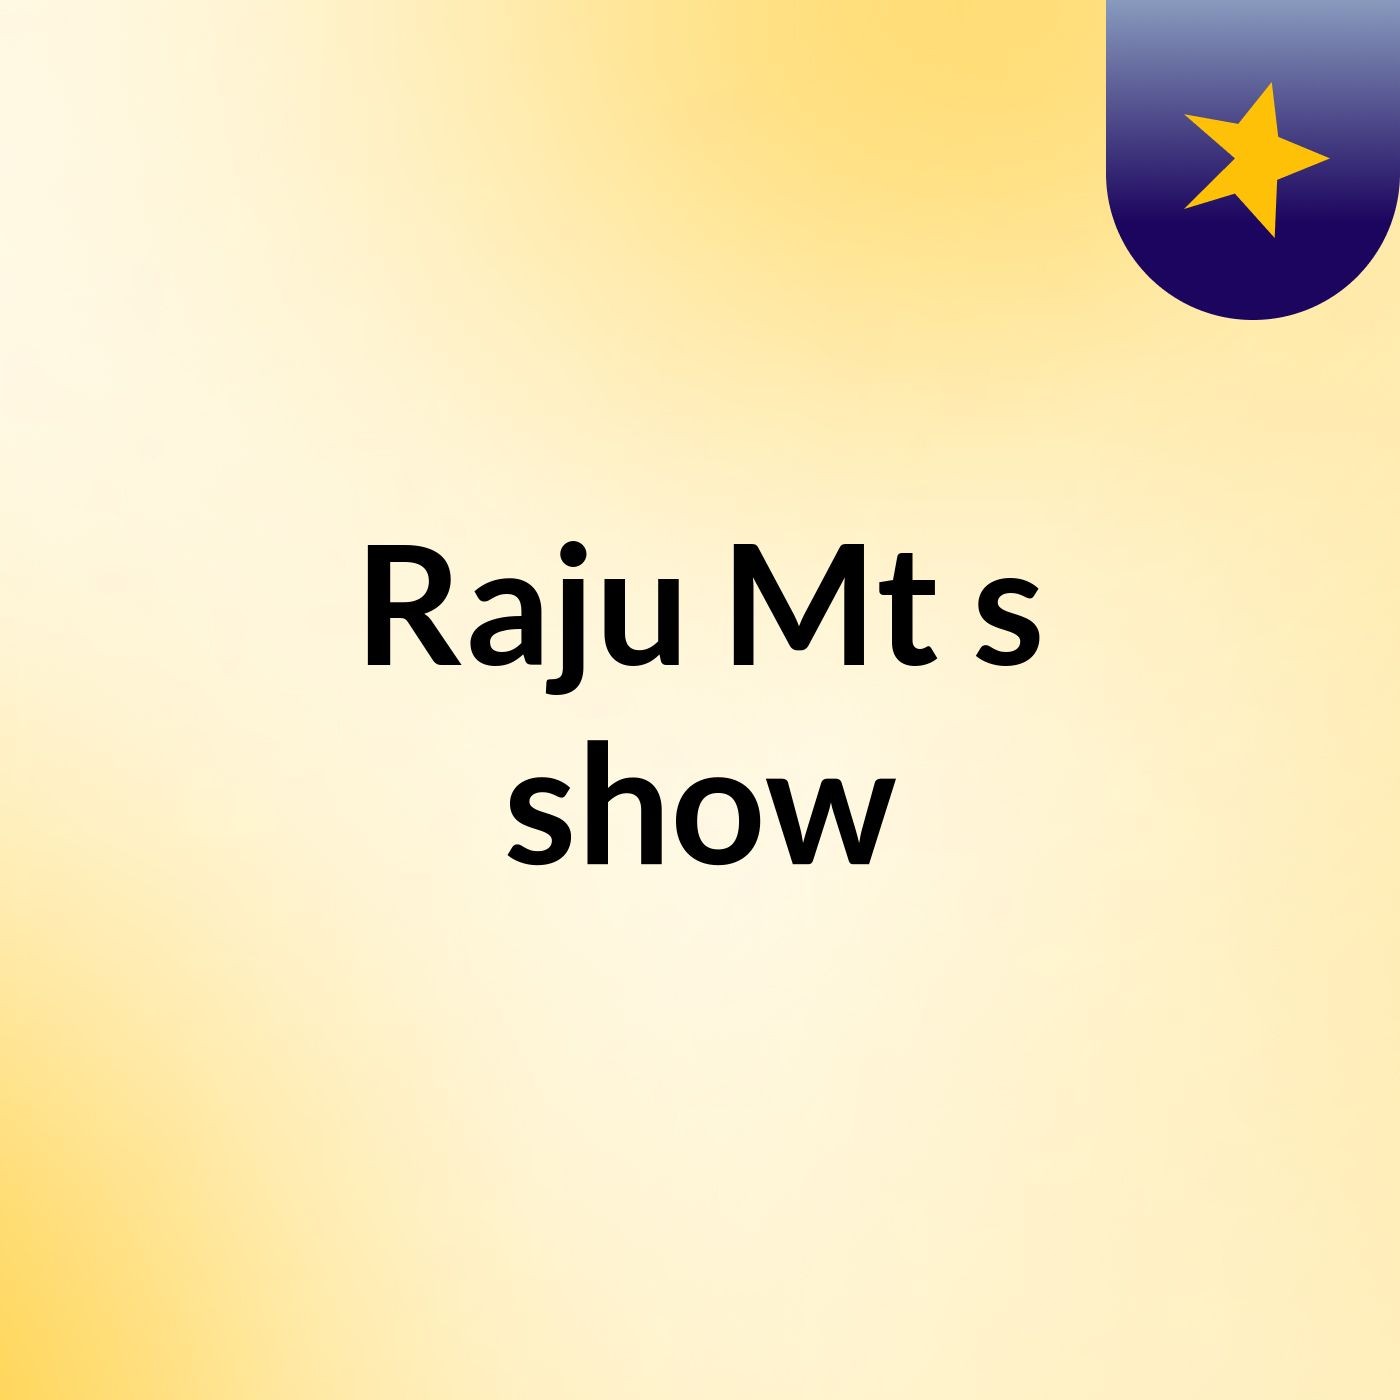 Raju Mt's show